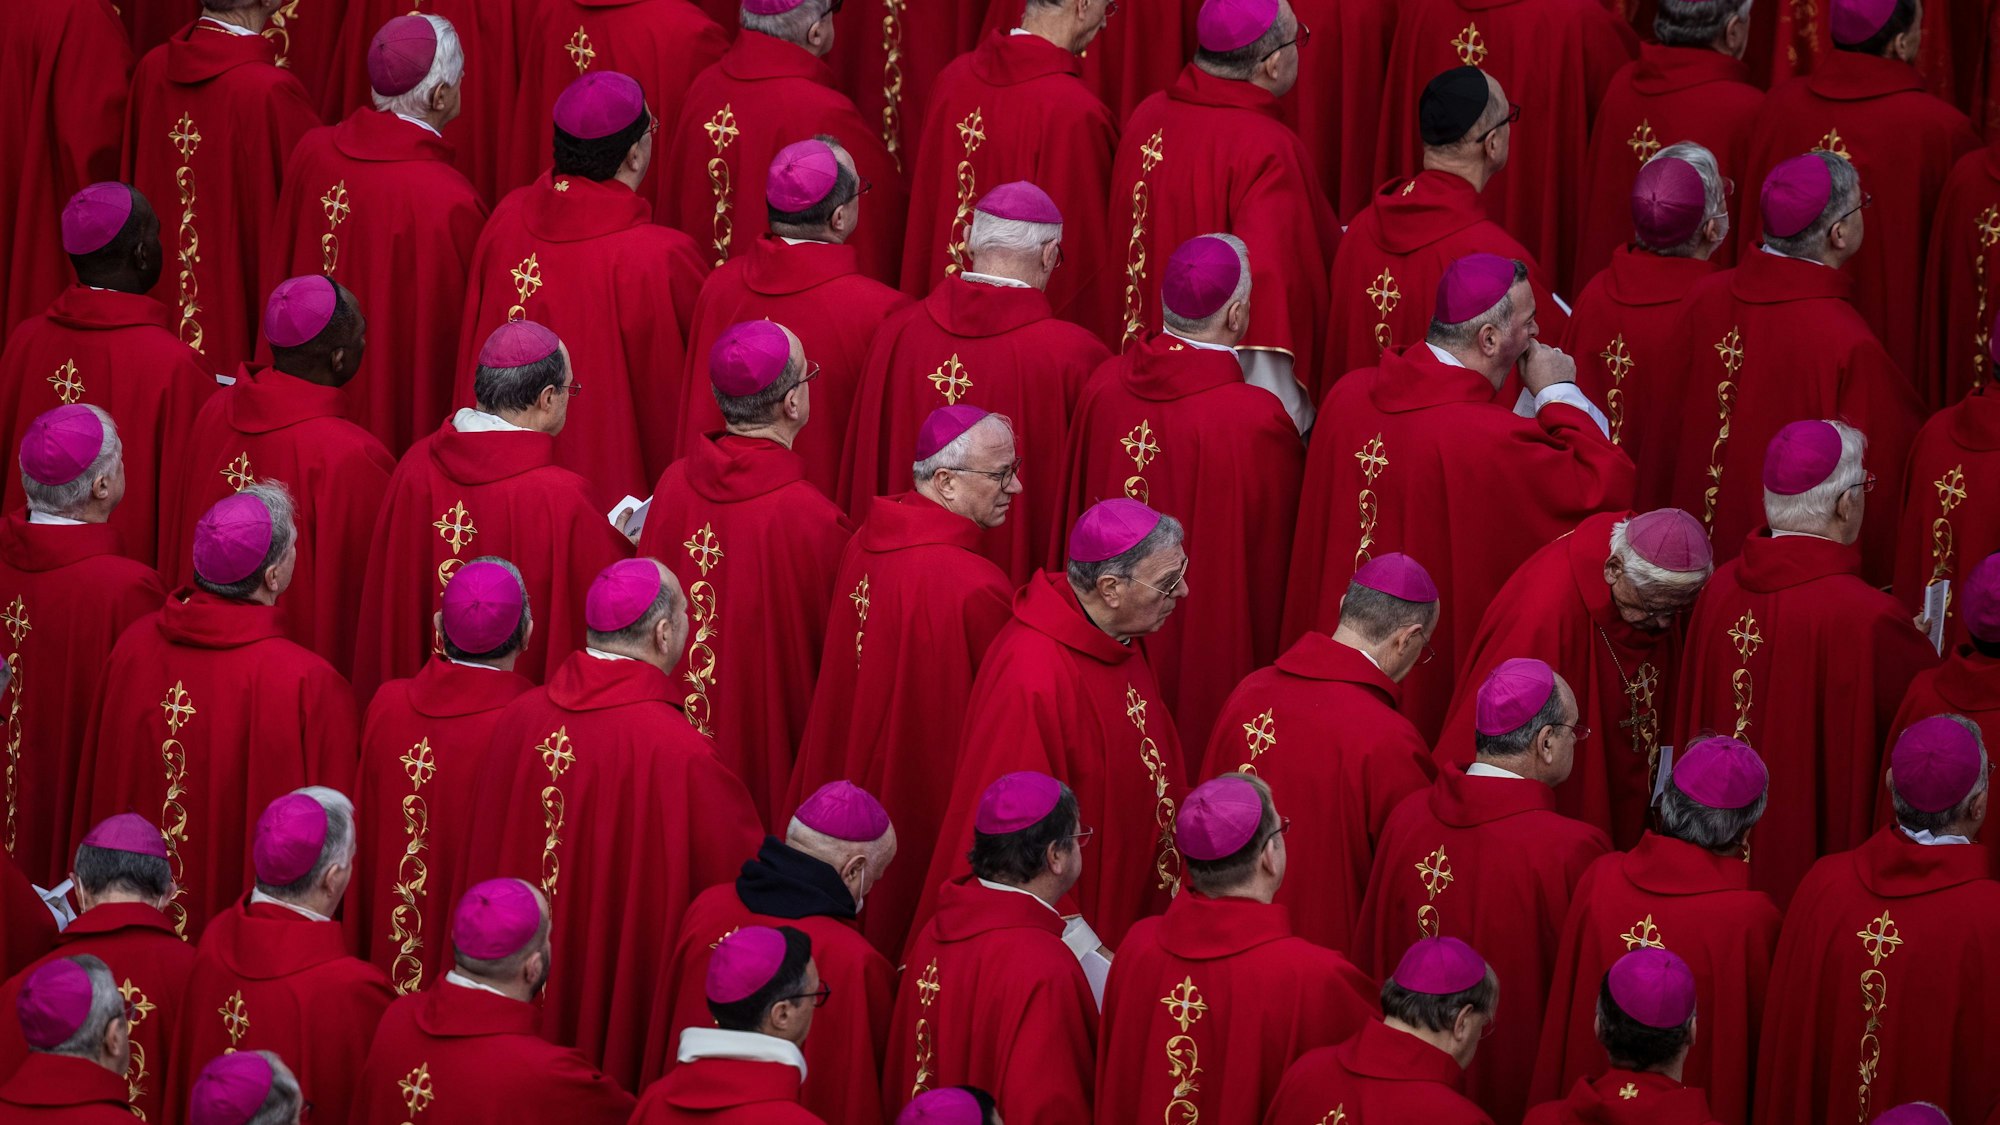 Katholische Bischöfe nehmen an der öffentlichen Trauermesse für den emeritierten Papst Benedikt XVI. auf dem Petersplatz teil. Sie tragen rote Messgewänder und Scheitelkäppchen in der Bischofsfarbe violett.